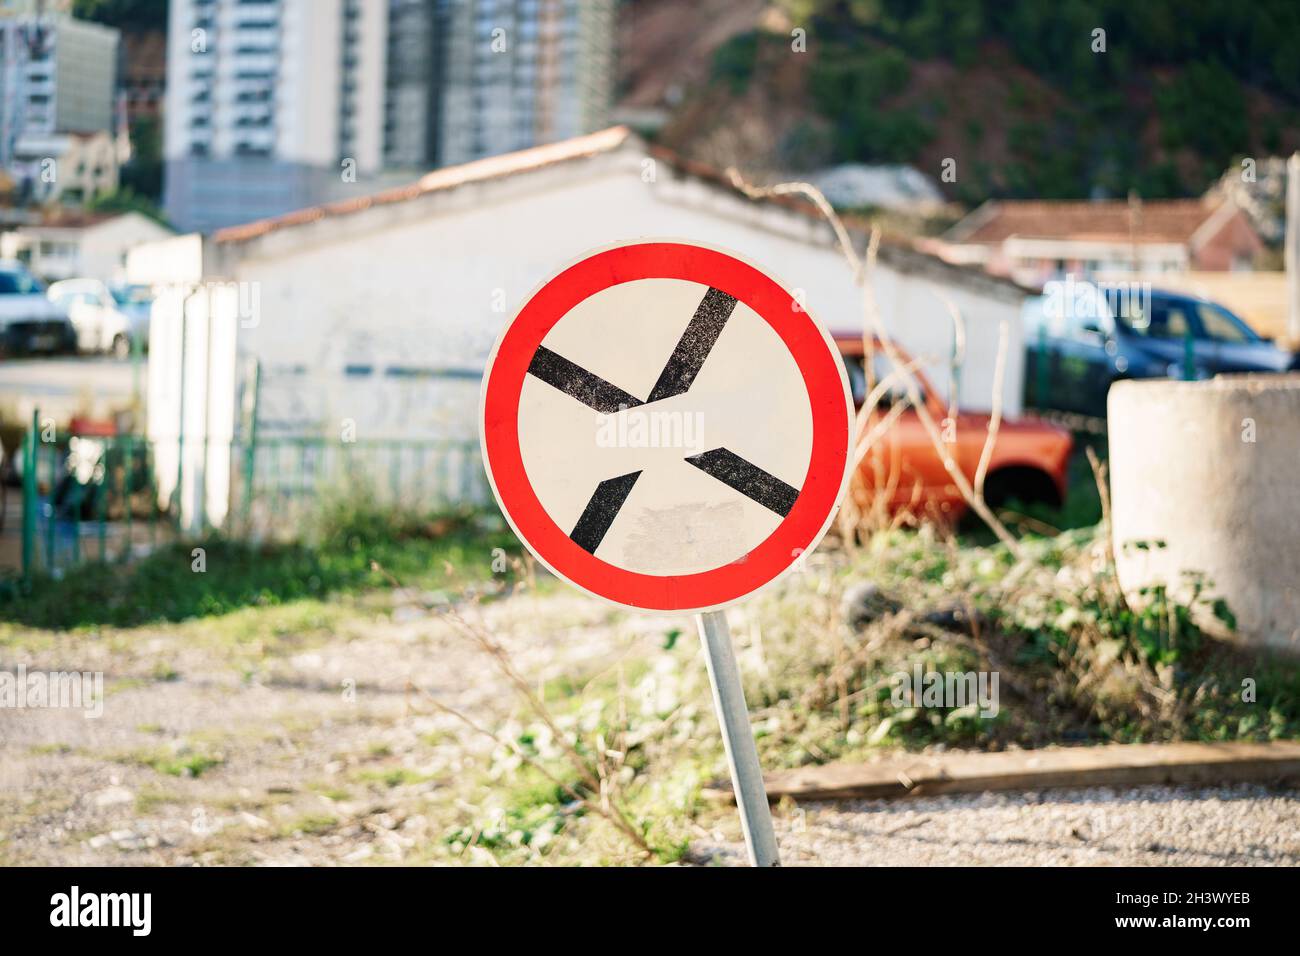 Ein rundes Straßenschild mit einem schwarzen Kreuz auf dem weißen Hintergrund bedeutet ein Parkverbot. Stockfoto